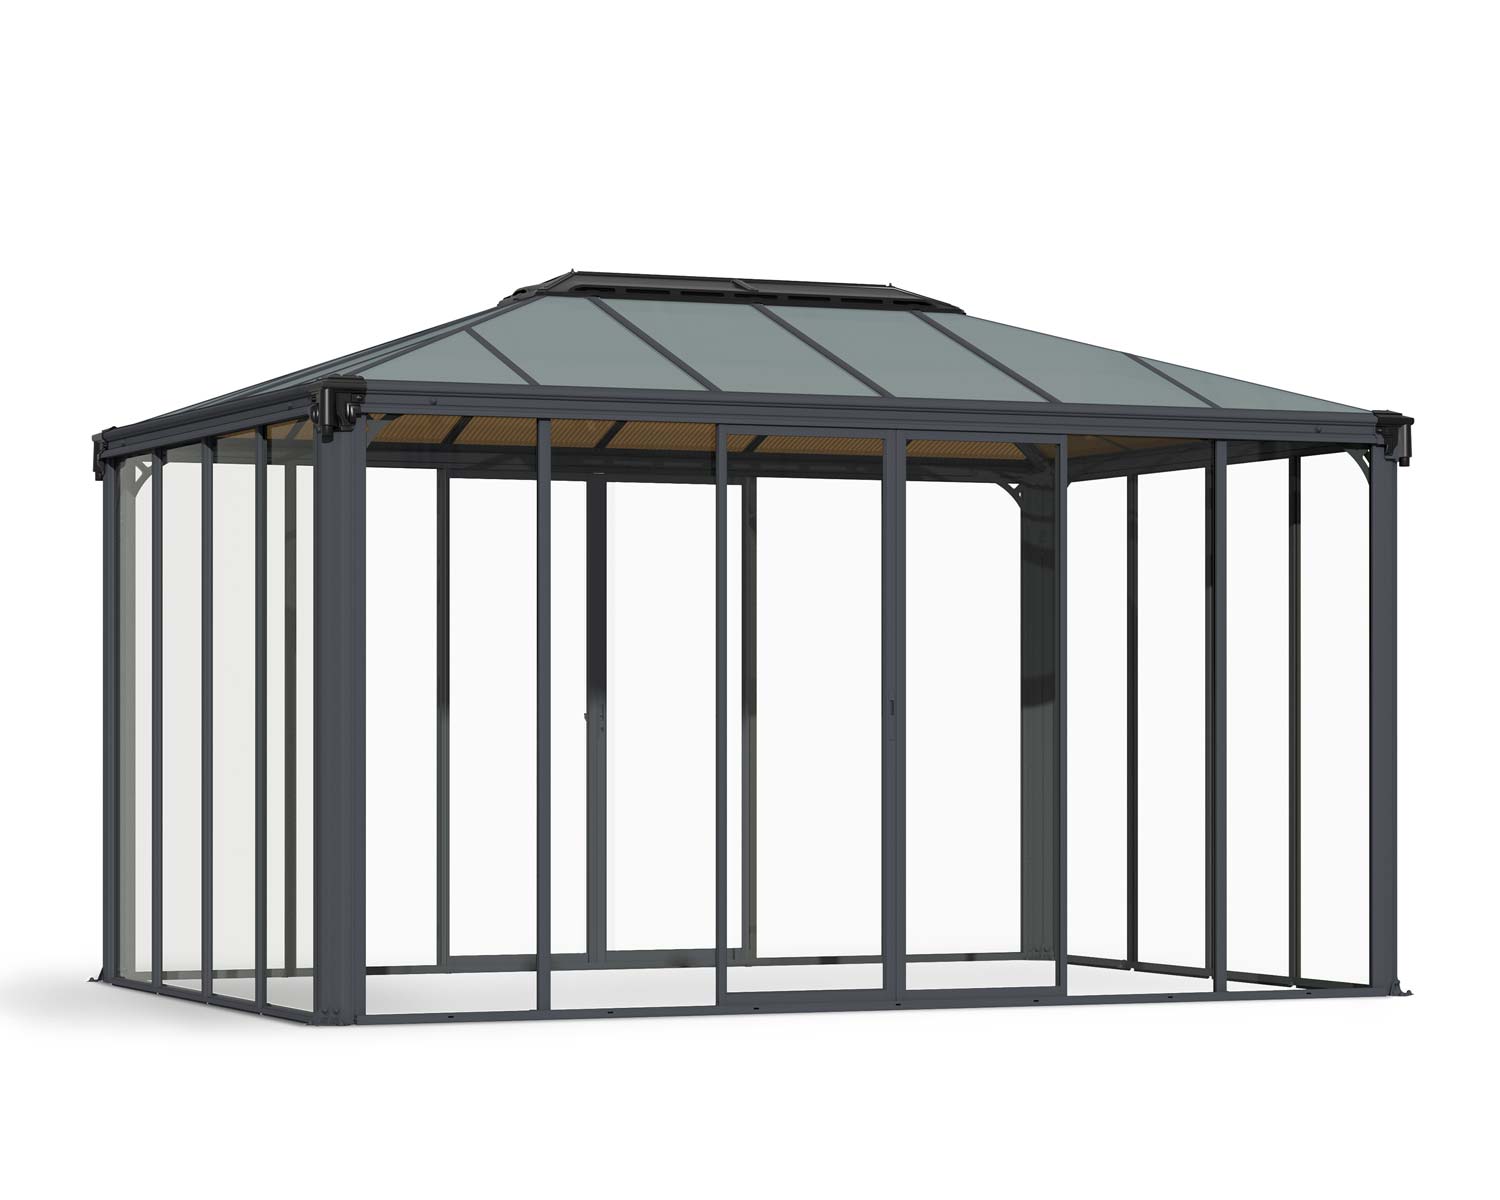 Enclosed Gazebo Kit Ledro 4300 10 ft. x 14 ft. Grey Structure & Hybrid Glazing